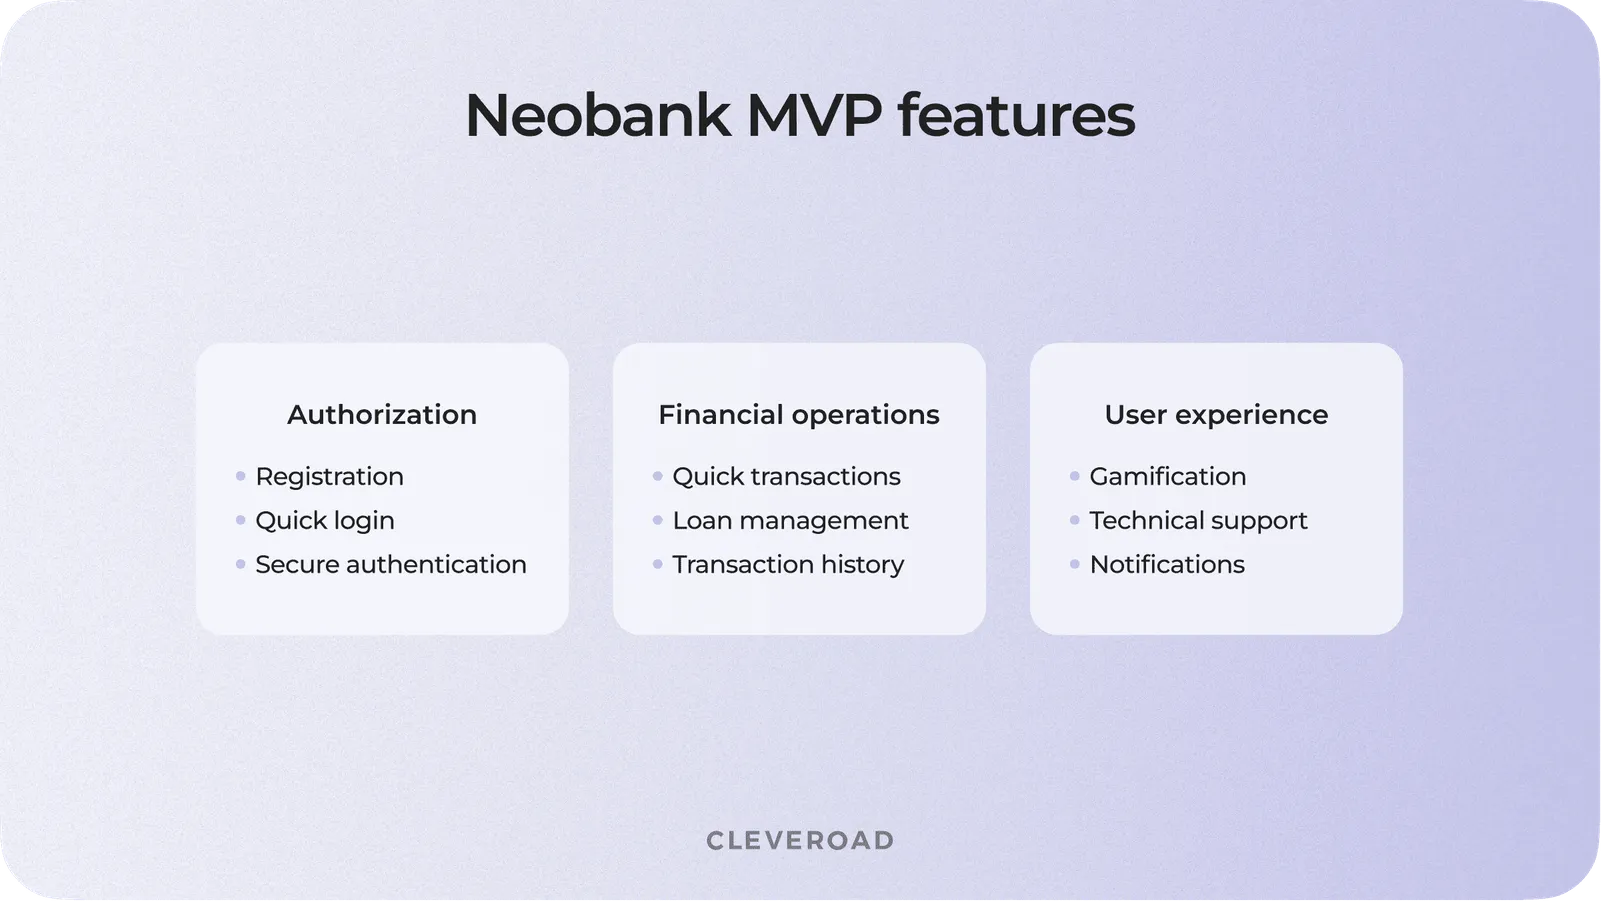 Neobank MVP features